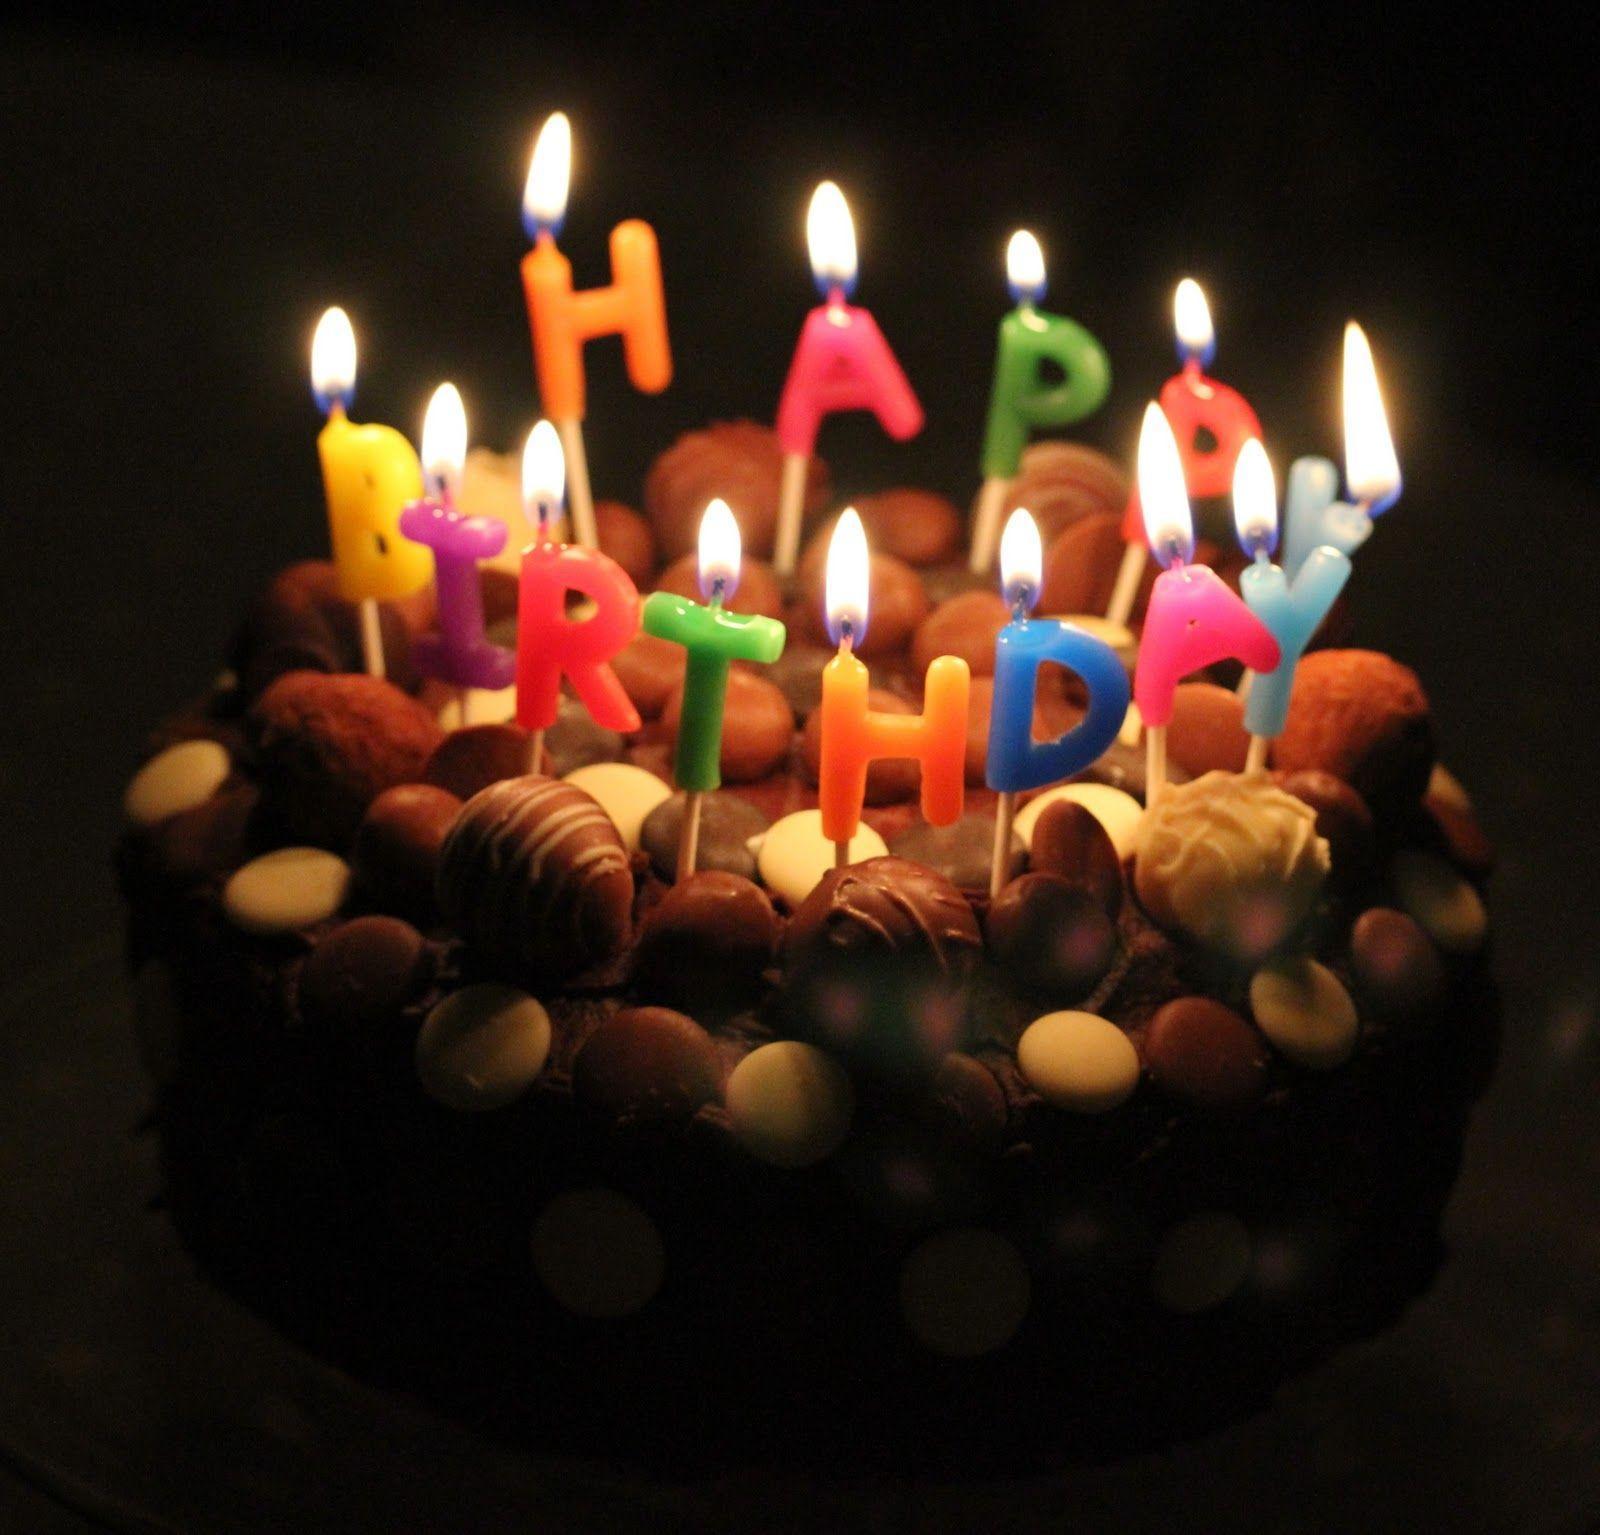 Happy birthday cake image. Funny Happy Birthday wishes